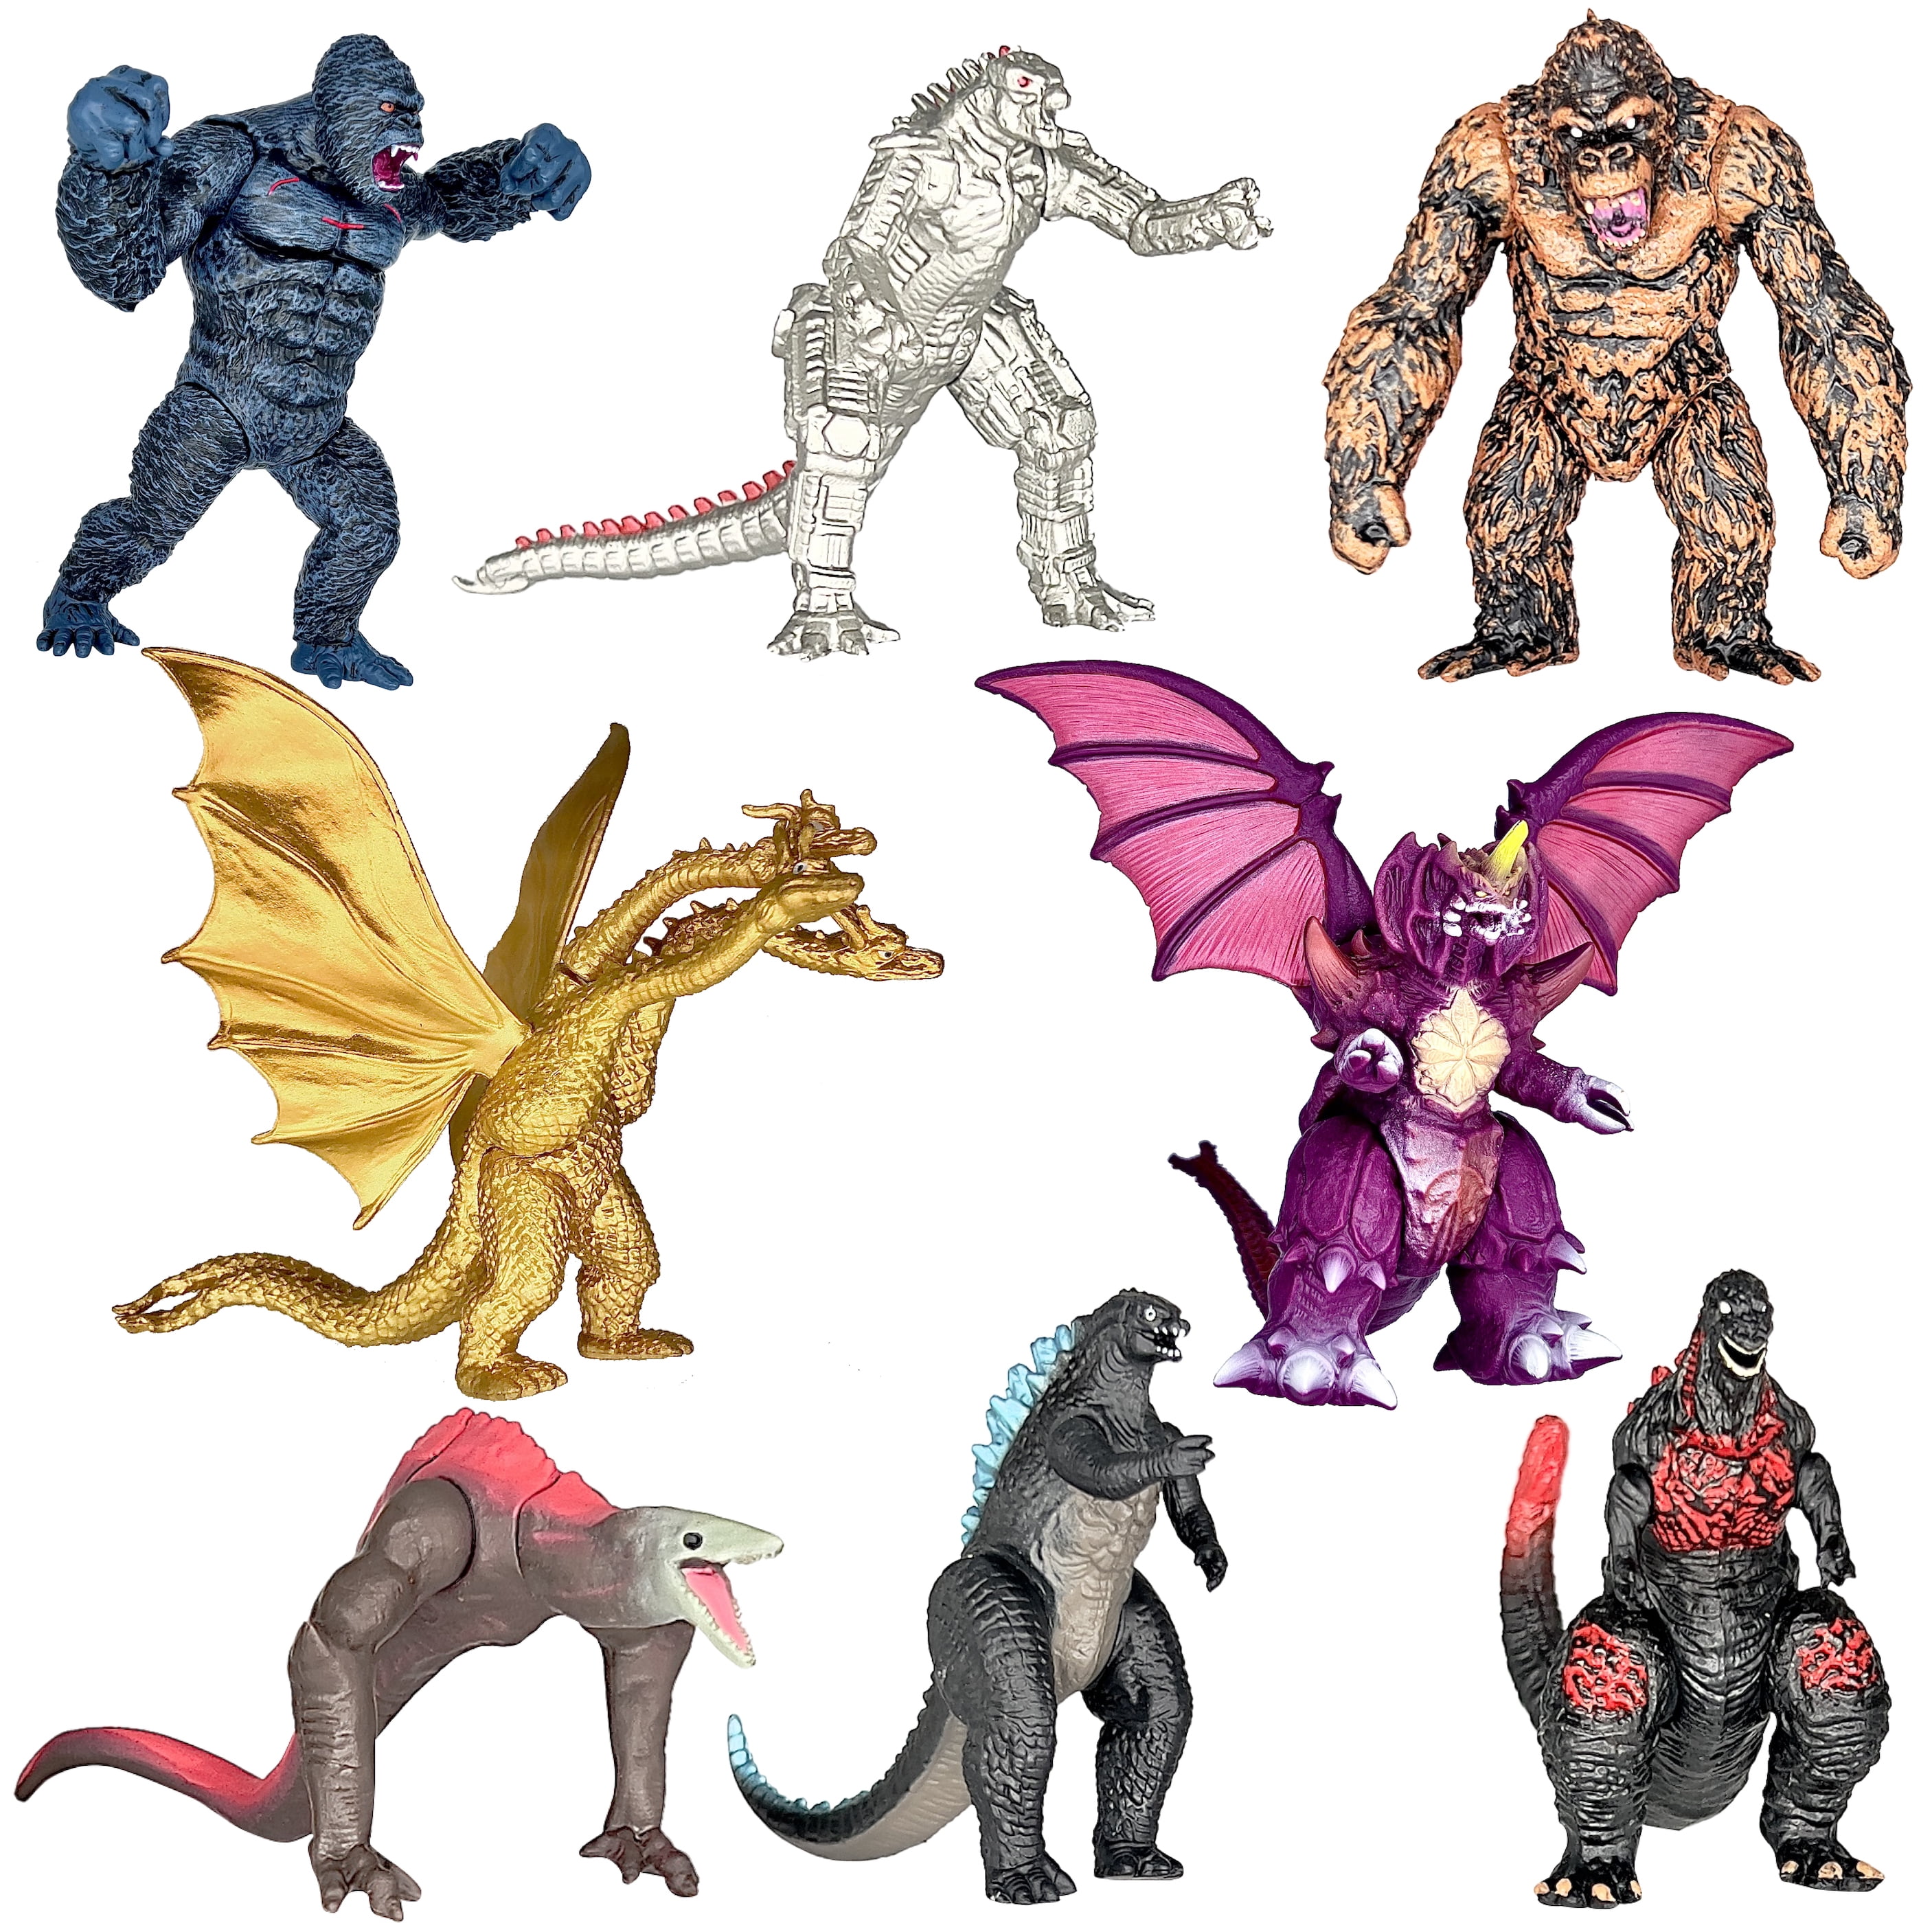 Godzilla x Kong Godzilla Vs Shimo Figure 2-Pack by Playmates Toys